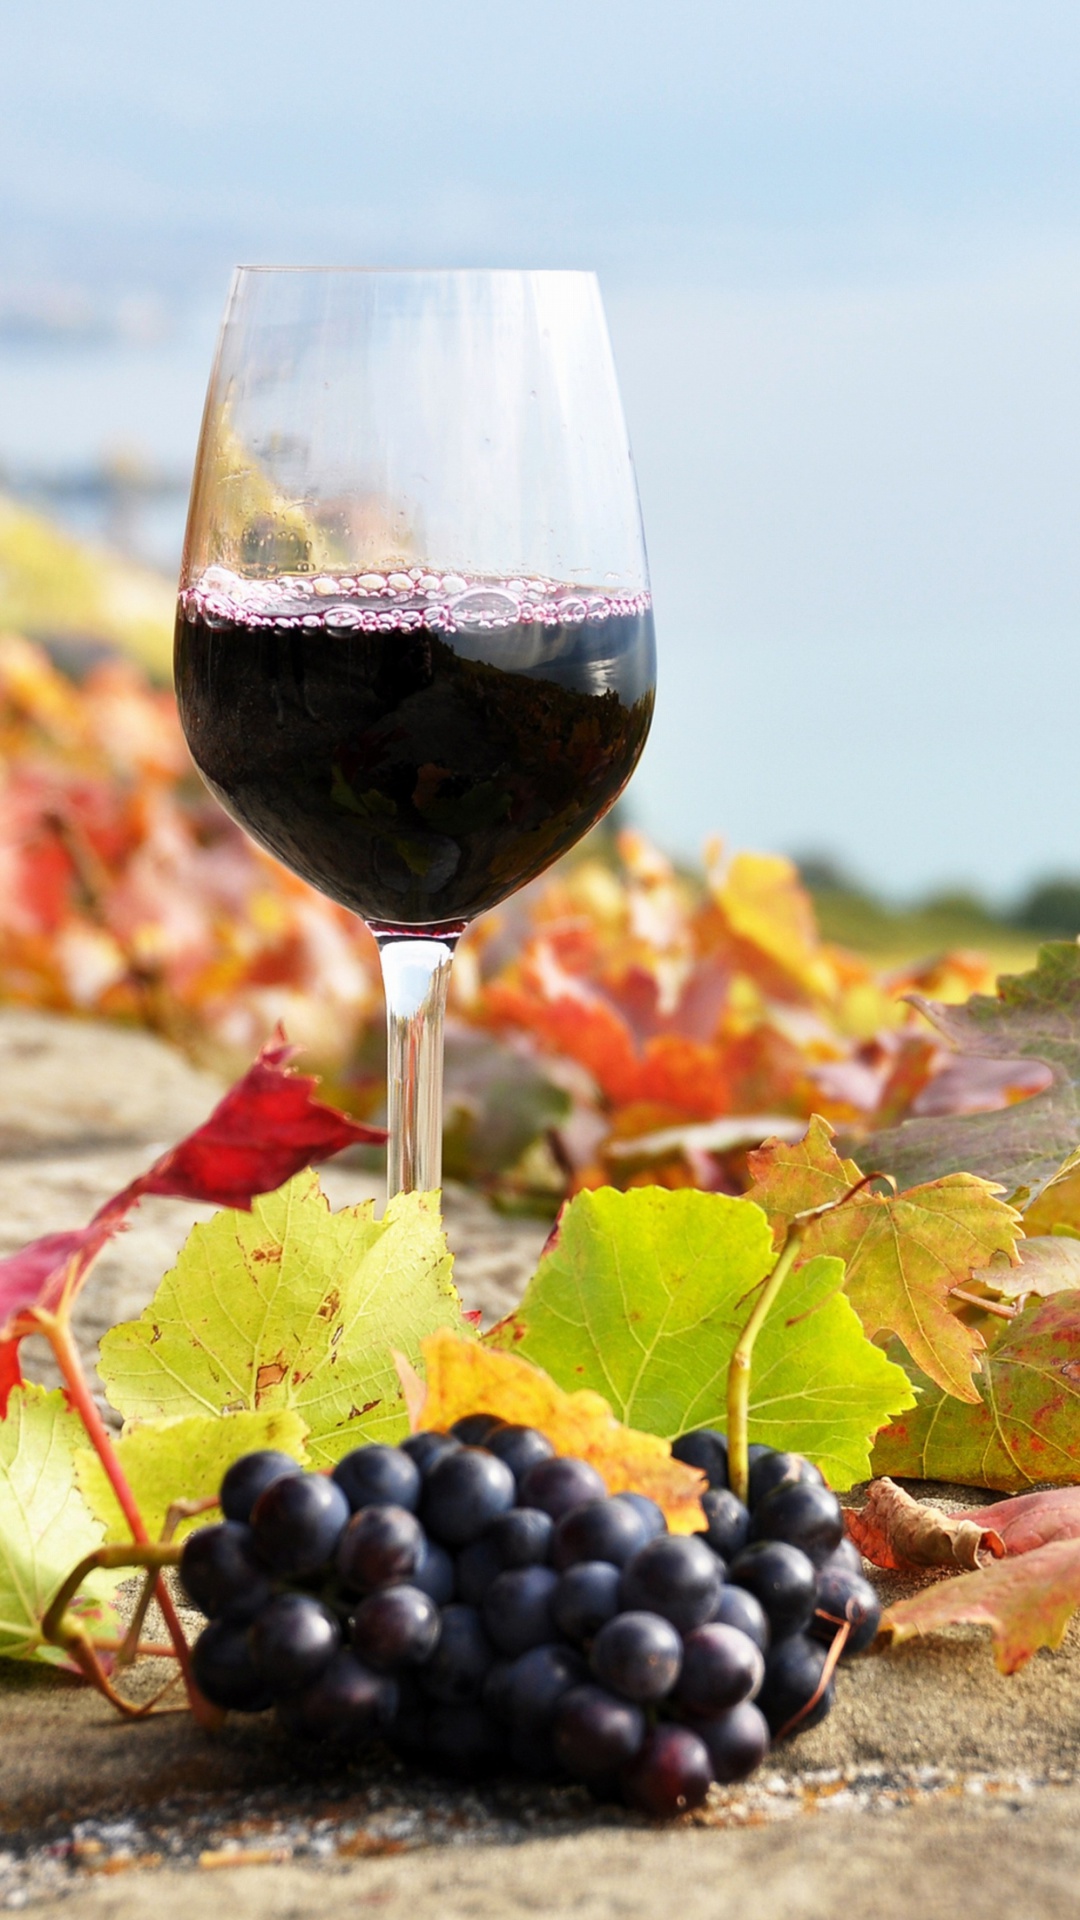 Обои Wine Test in Vineyards 1080x1920